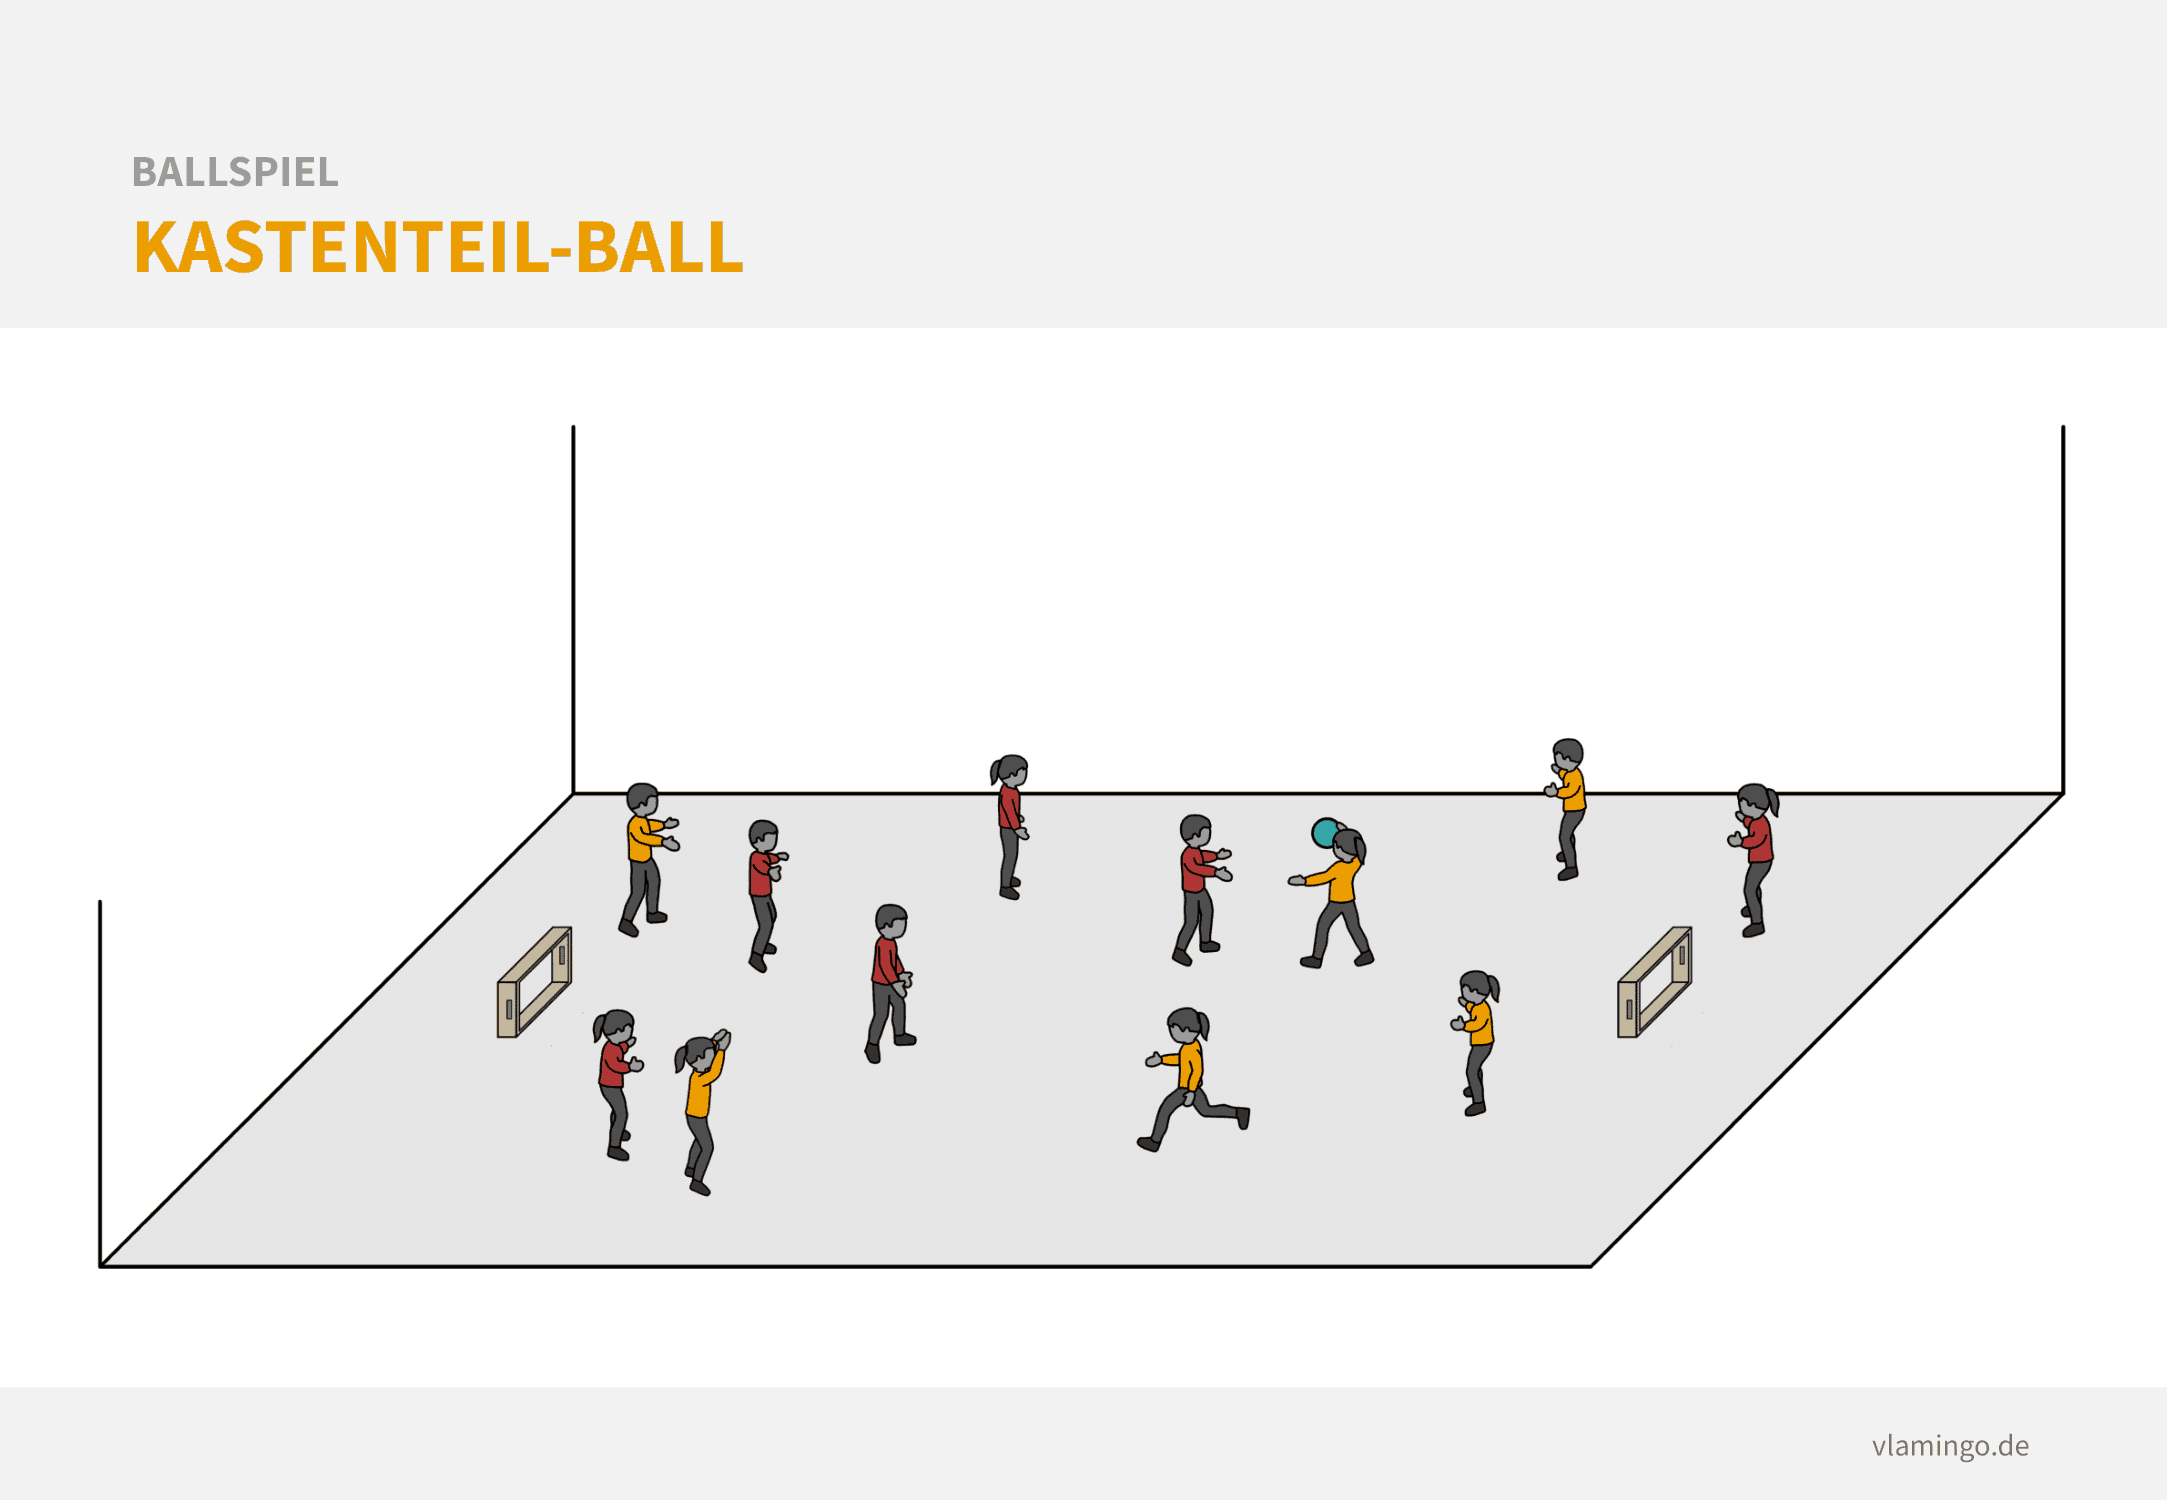 Ballspiel: Kastenteil-Ball